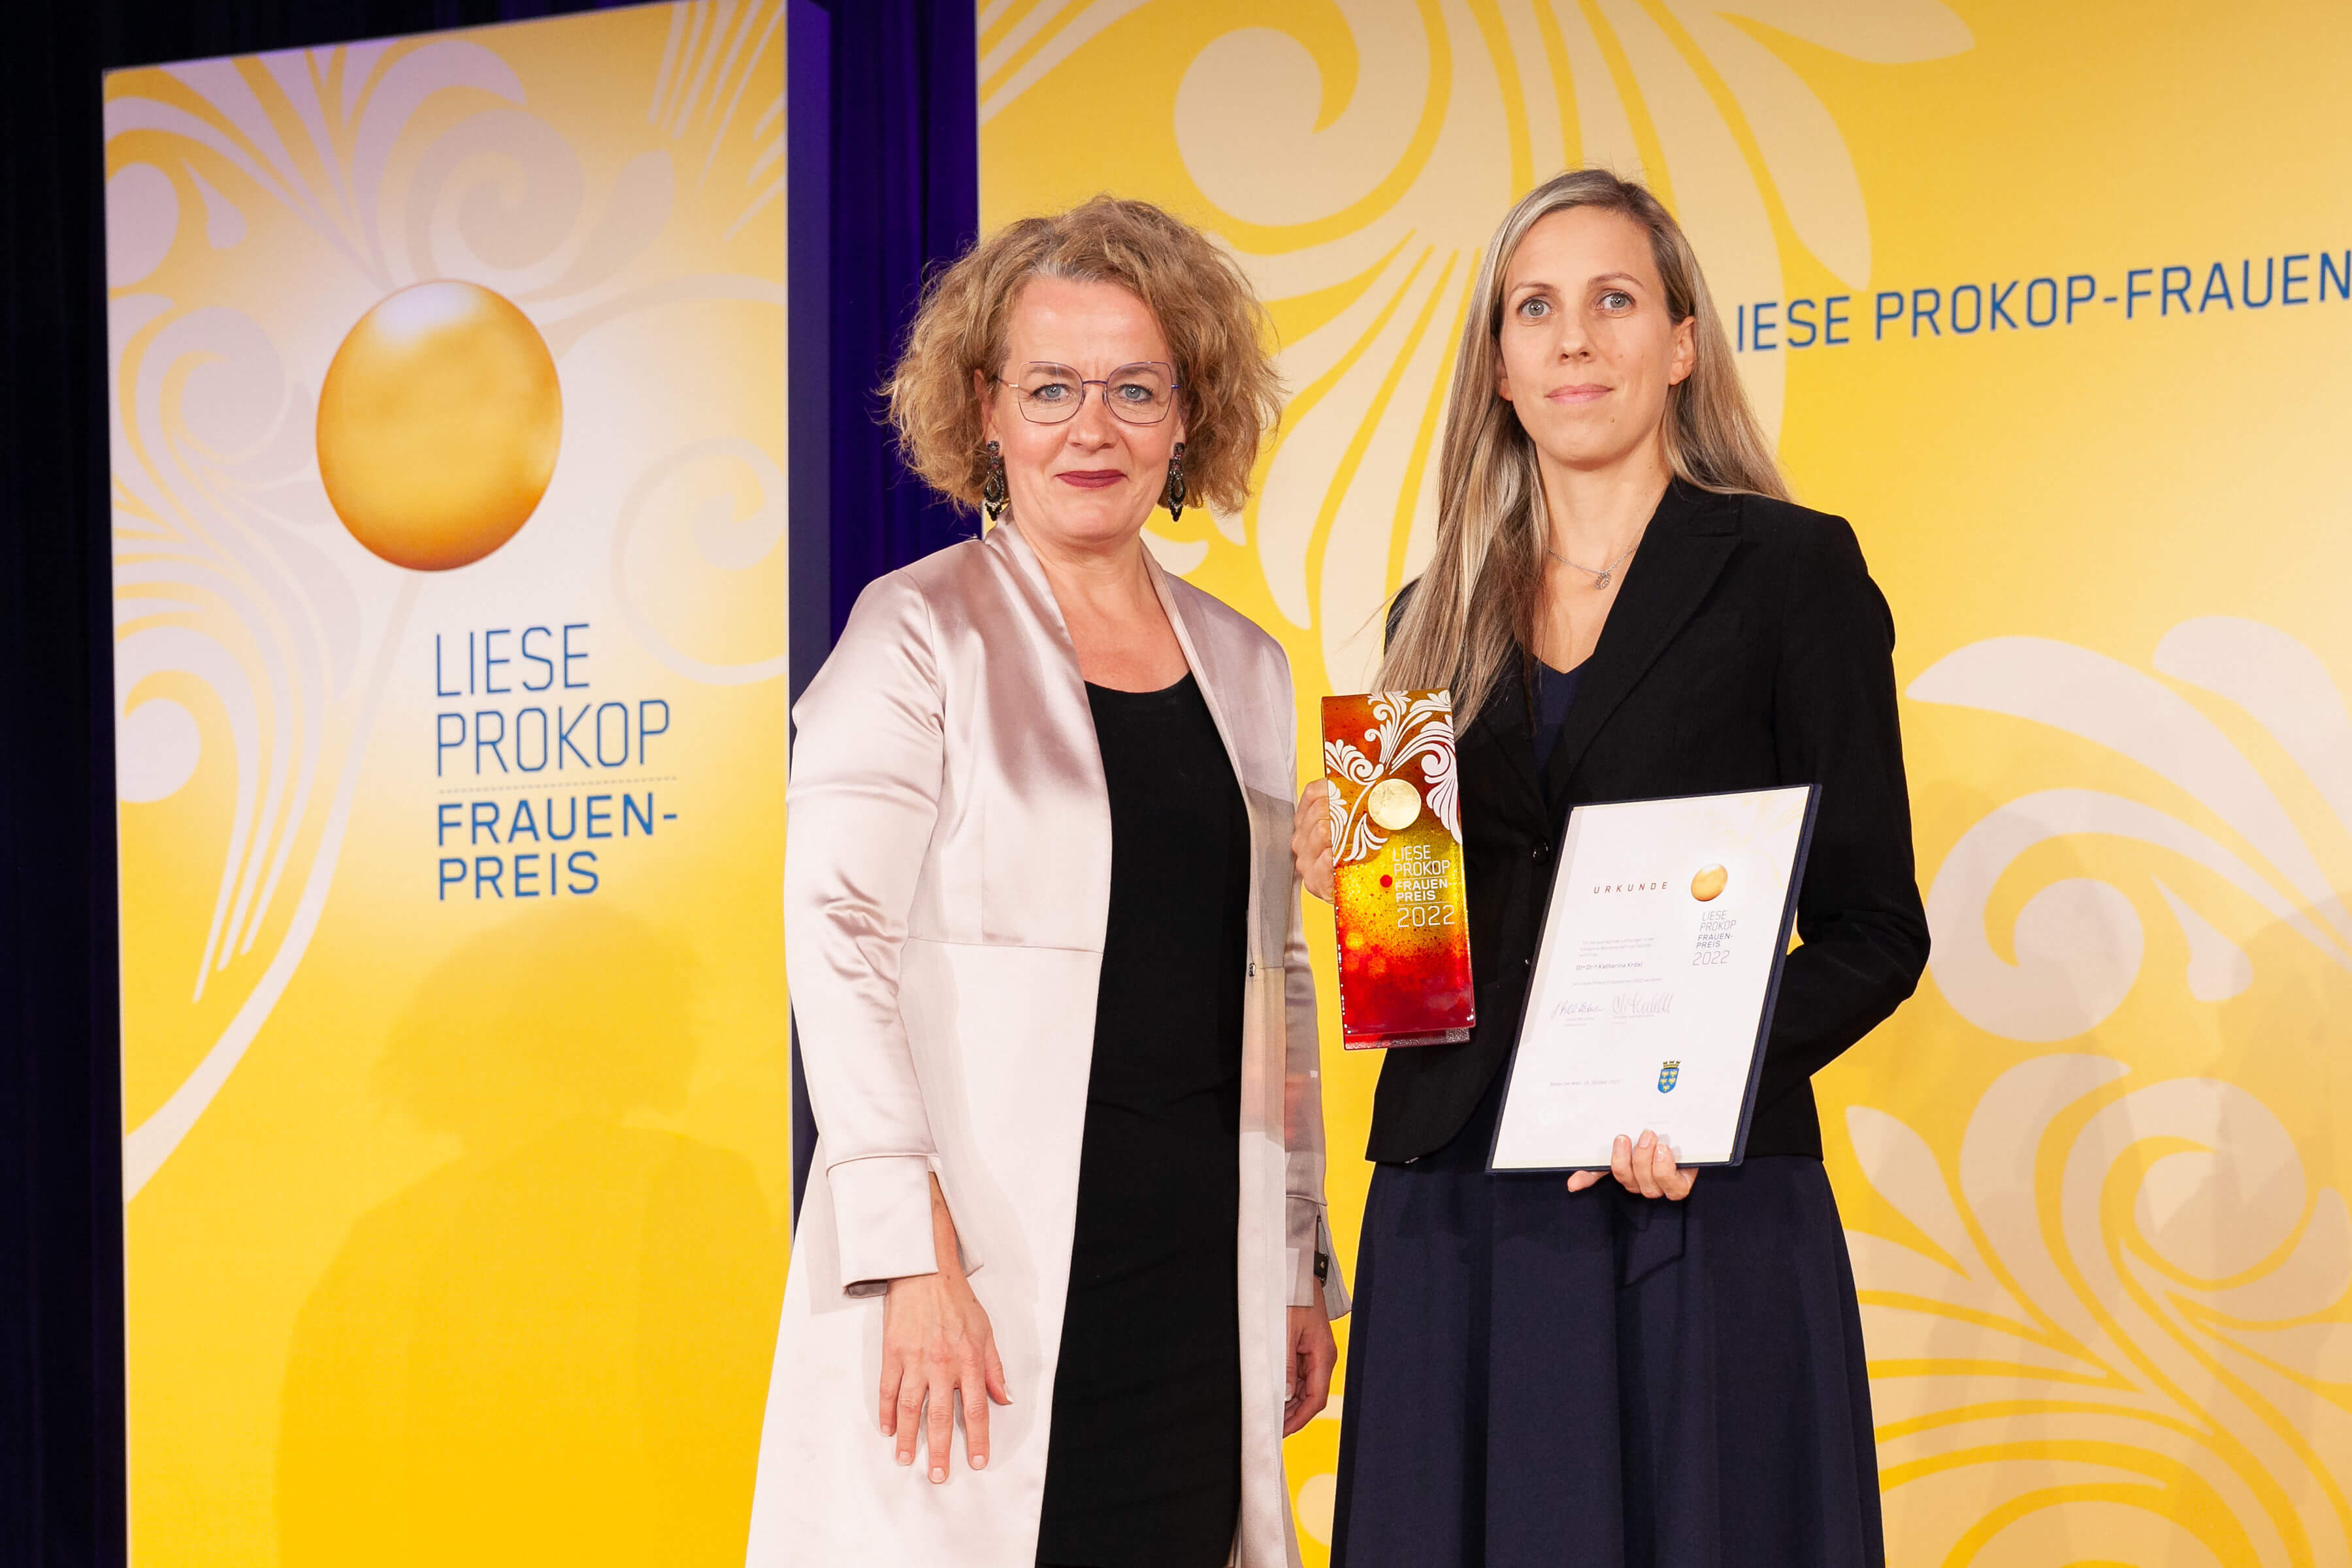 Das Logo des Liese-Prokop-Frauenpreises auf gelbem Hintergrund links, rechts daneben stehen zwei Frauen.